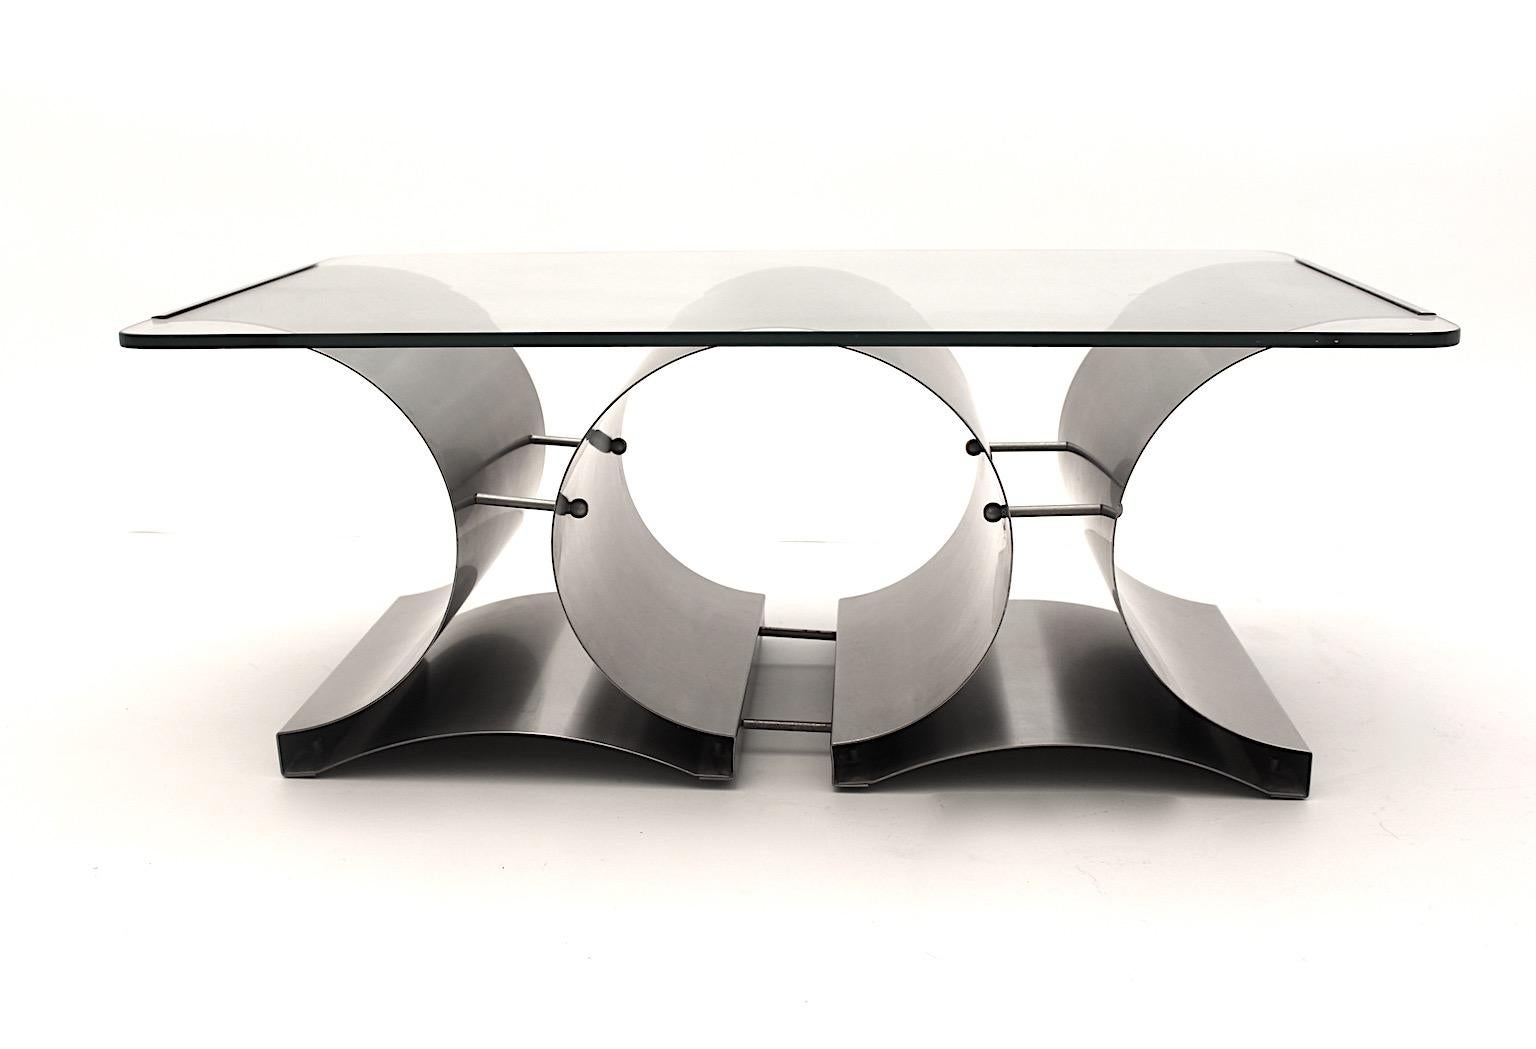 Table basse ou table de canapé vintage moderniste en acier inoxydable et verre transparent conçue par Francois Monnet vers 1970 en France.
Une belle table basse avec une base structurée en métal et surmontée d'un verre transparent épais et